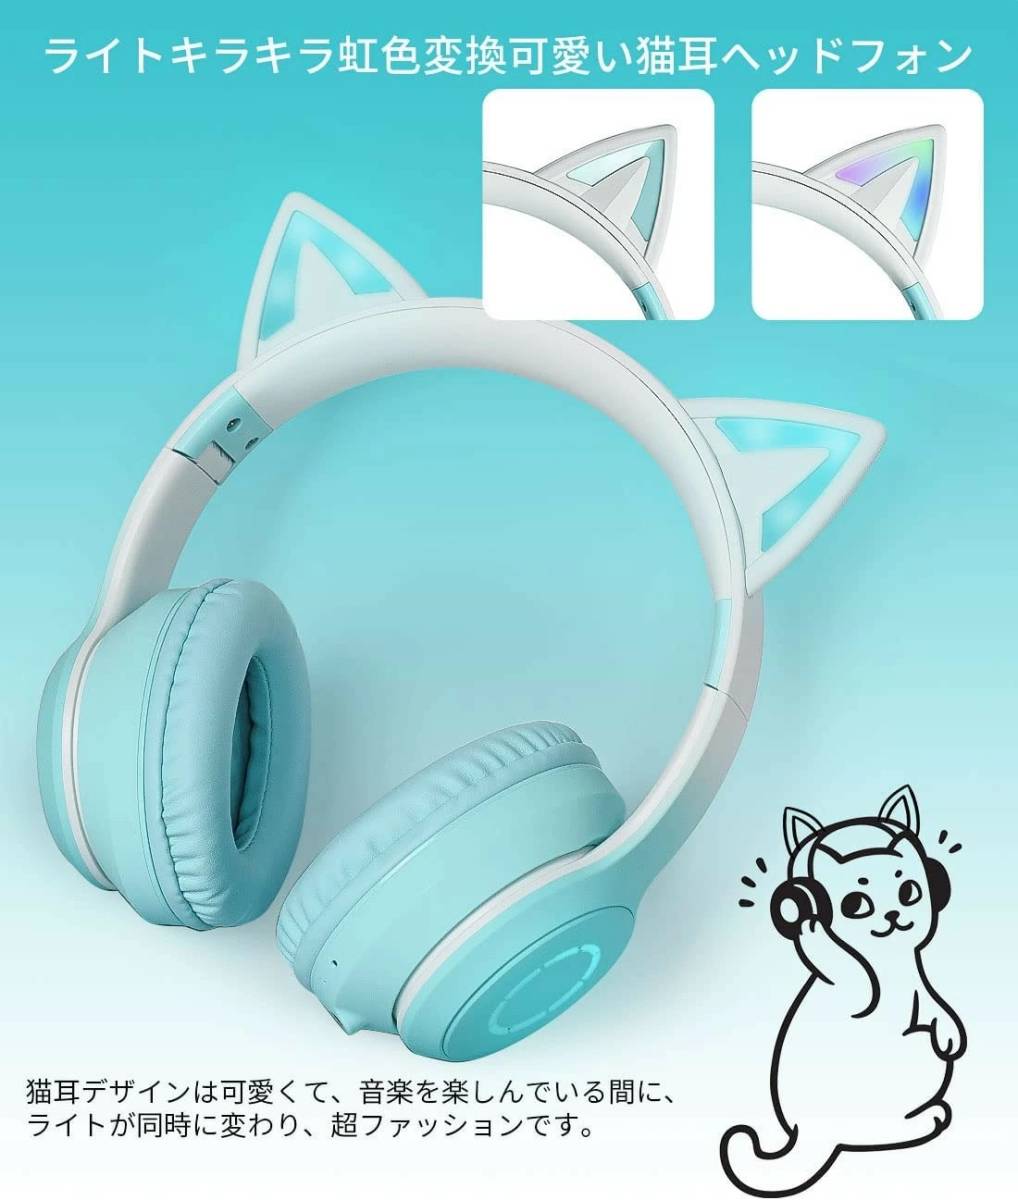 猫耳 ヘッドホン グリーン 可愛い 無線 対応 Bluetooth LED 虹色発光 ワイヤレス ヘッドフォン ヘッドホン ヘッドセット スマホ_画像3